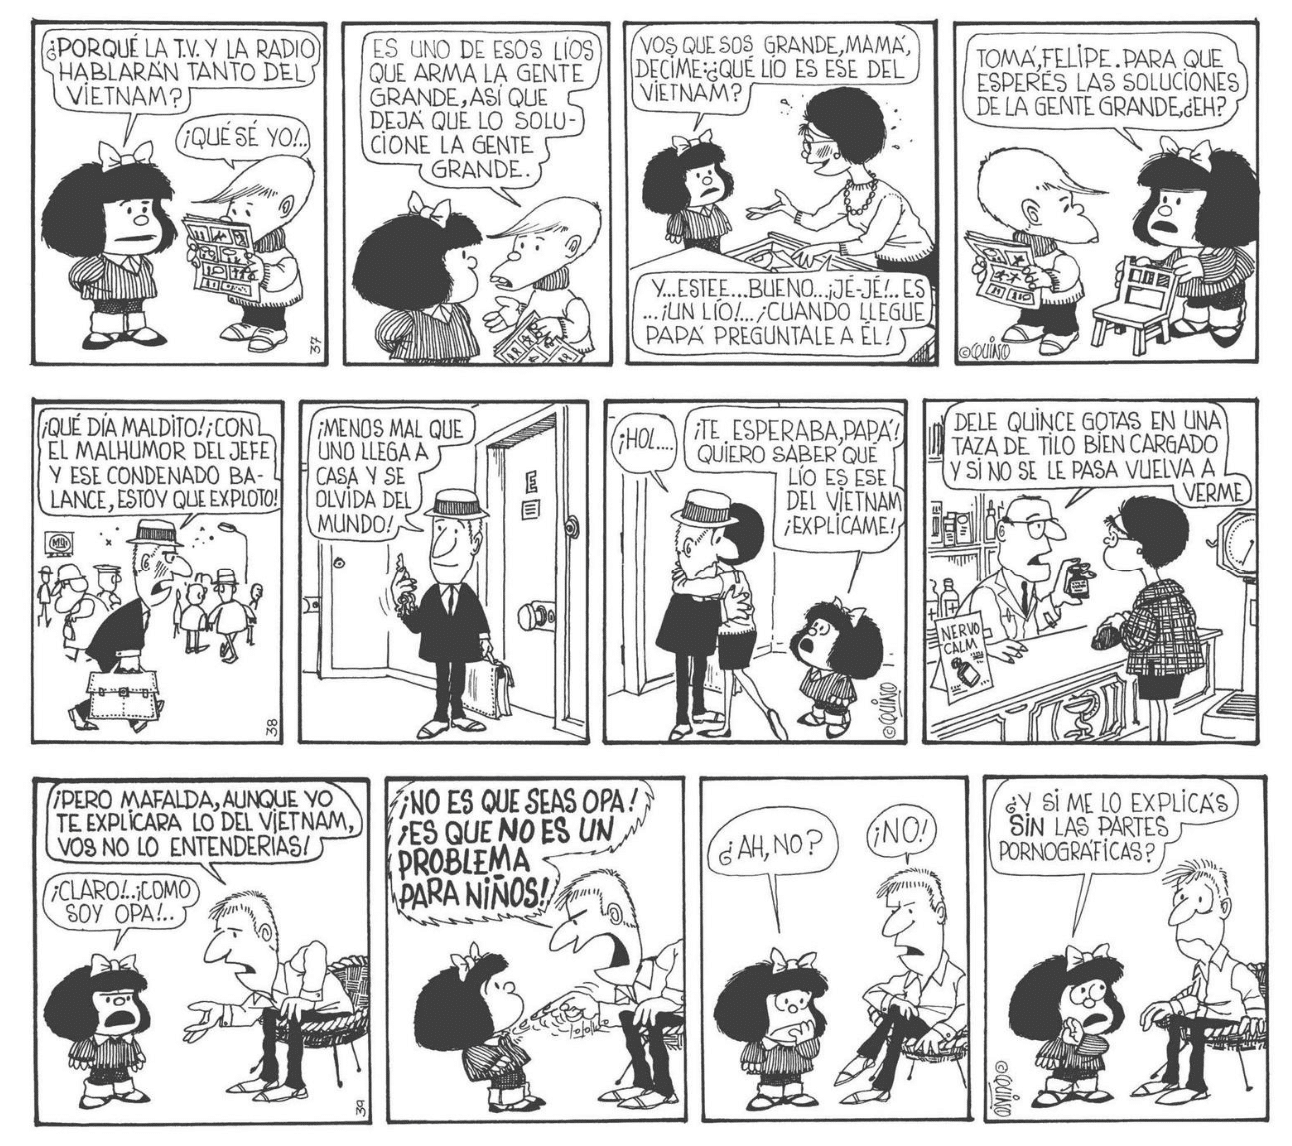 Los invidentes también podrán disfrutar de los cómic de Mafalda, ¡por fin en braille! 13